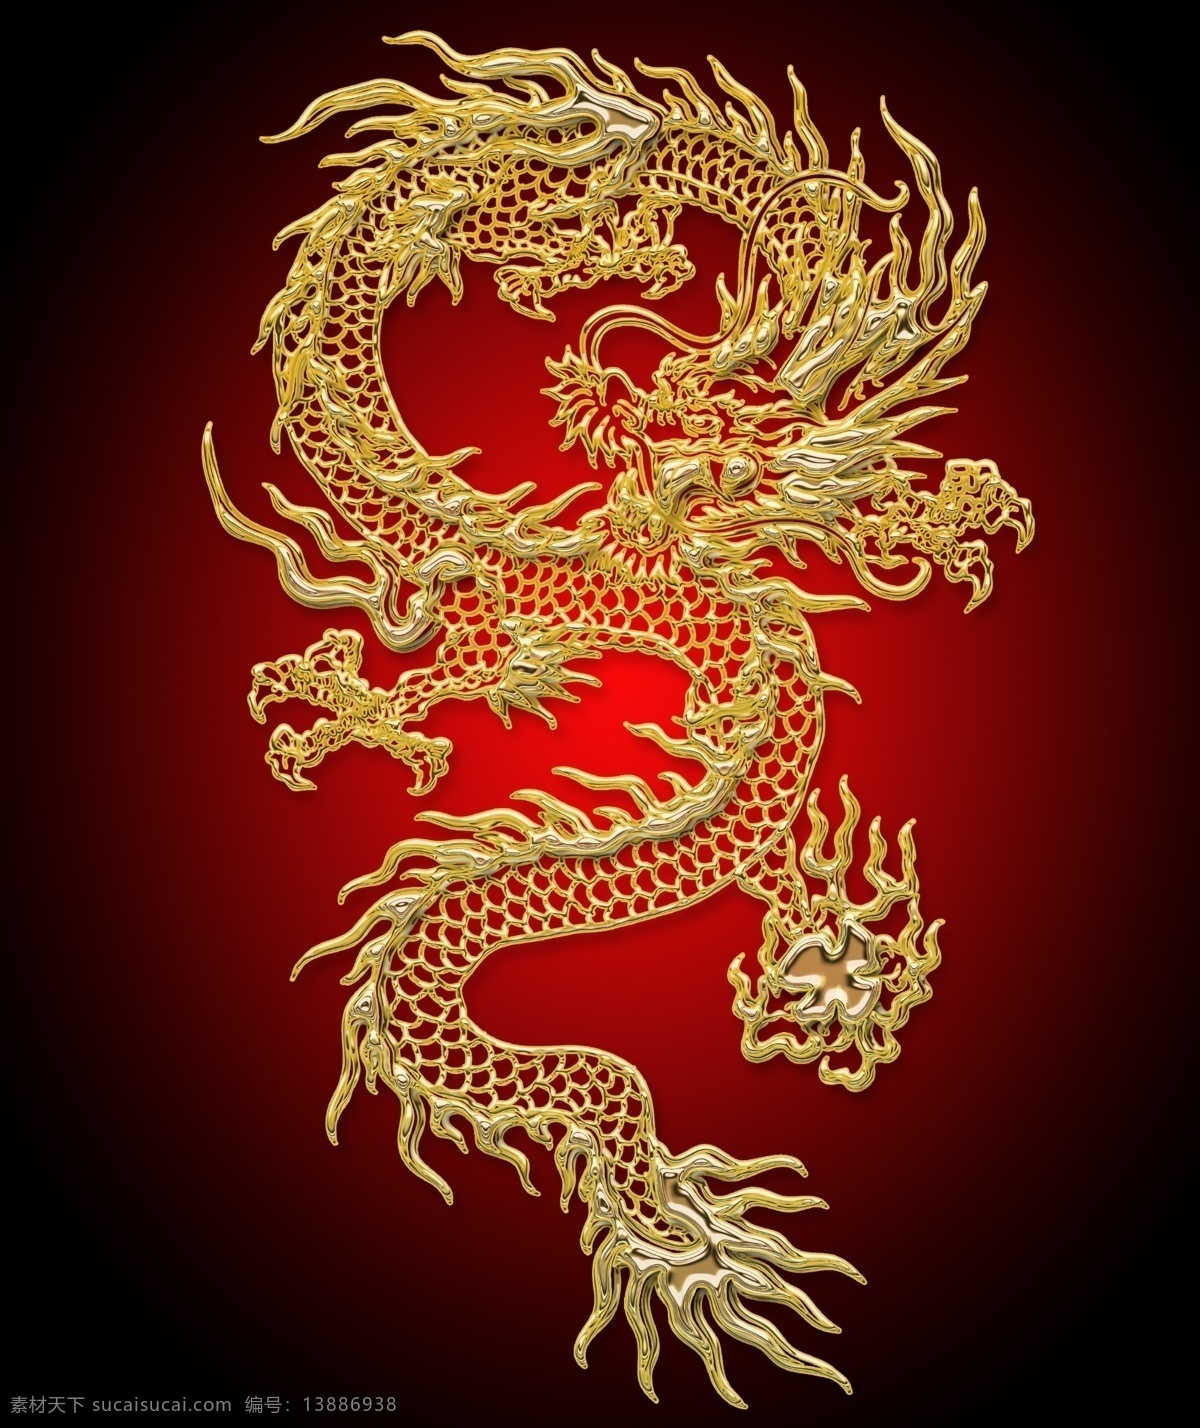 龙纹 国龙 传统龙 金龙 威武 威严 金色龙 手绘中国龙 龙素材